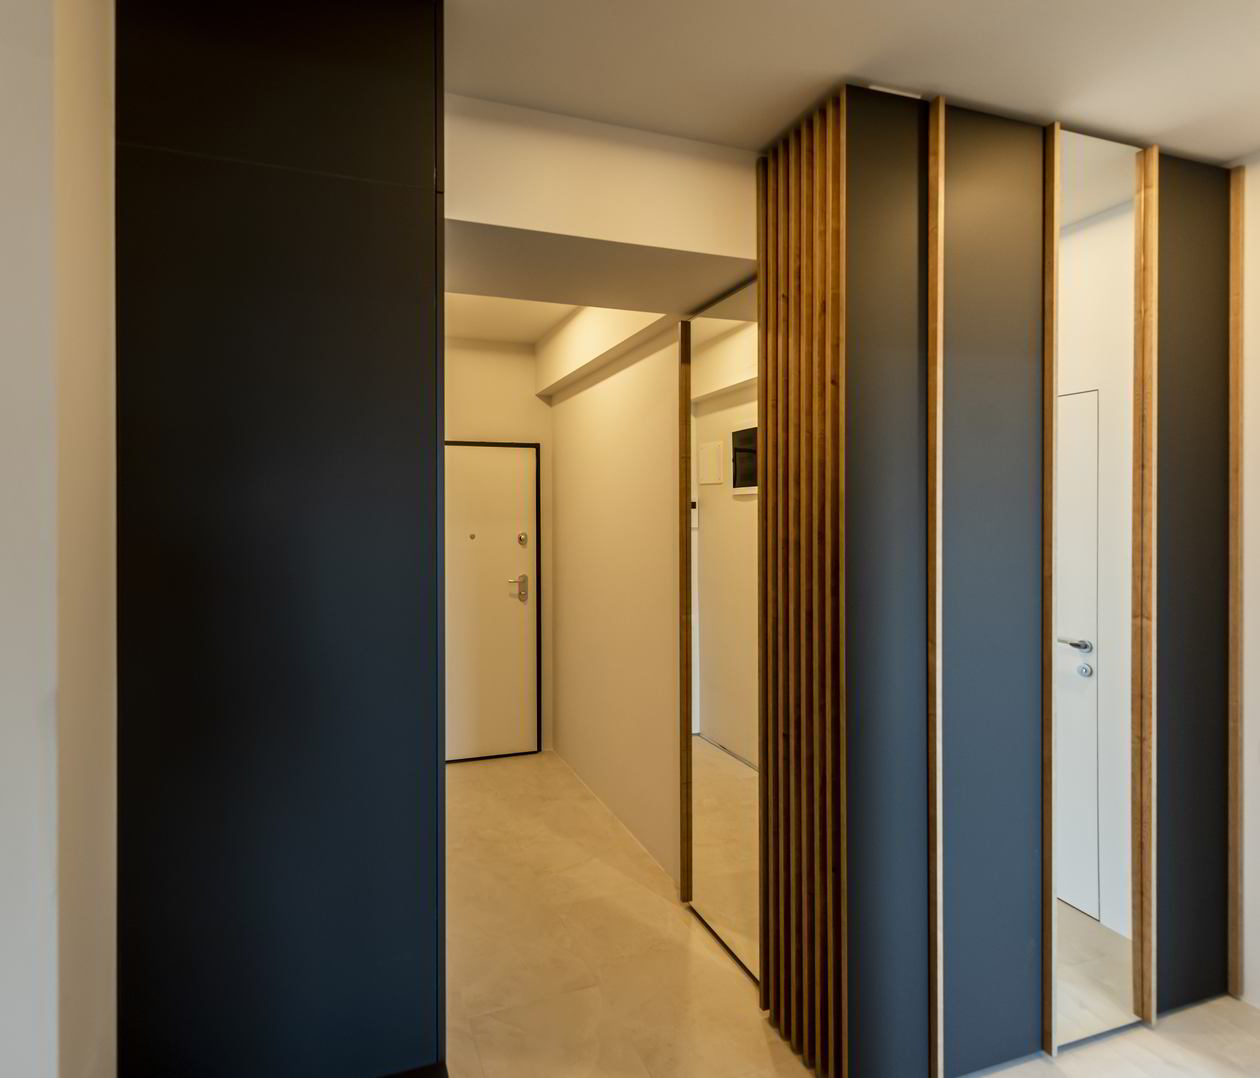 Apartament cu 3 camere, locuinta pentru copil in Constanta, 04 Februarie 2022, Mobilat integral COD.13802